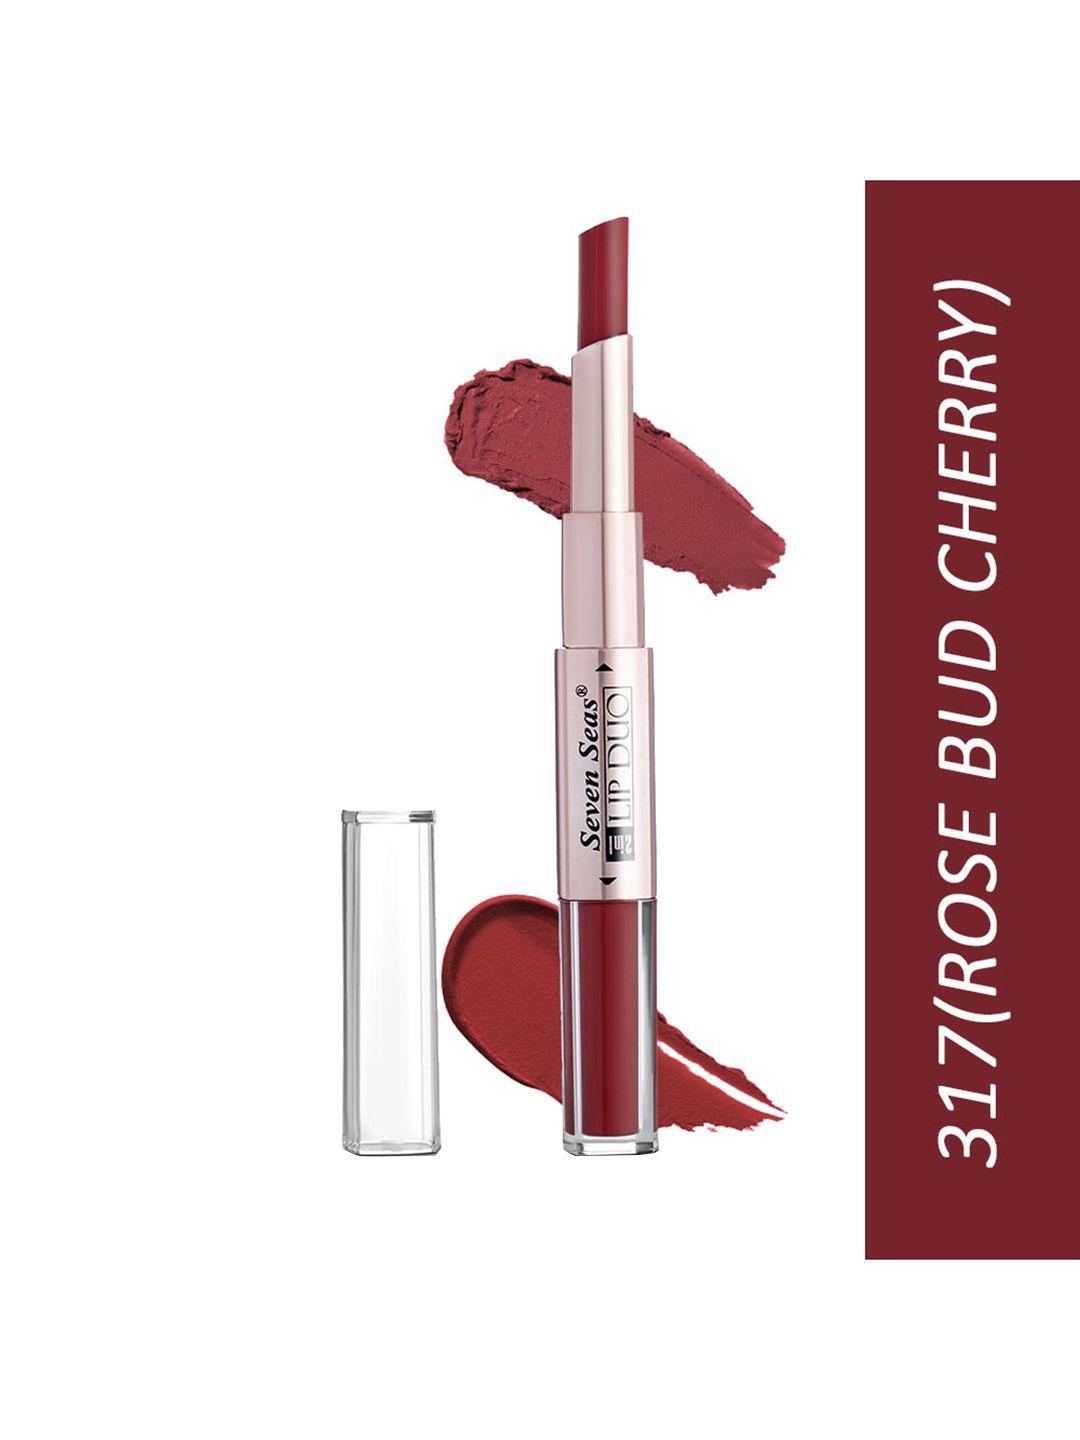 Seven Seas Maroon Lip Duo 2 In 1 Liquid Lipstick With Stick Lipstick Price in India